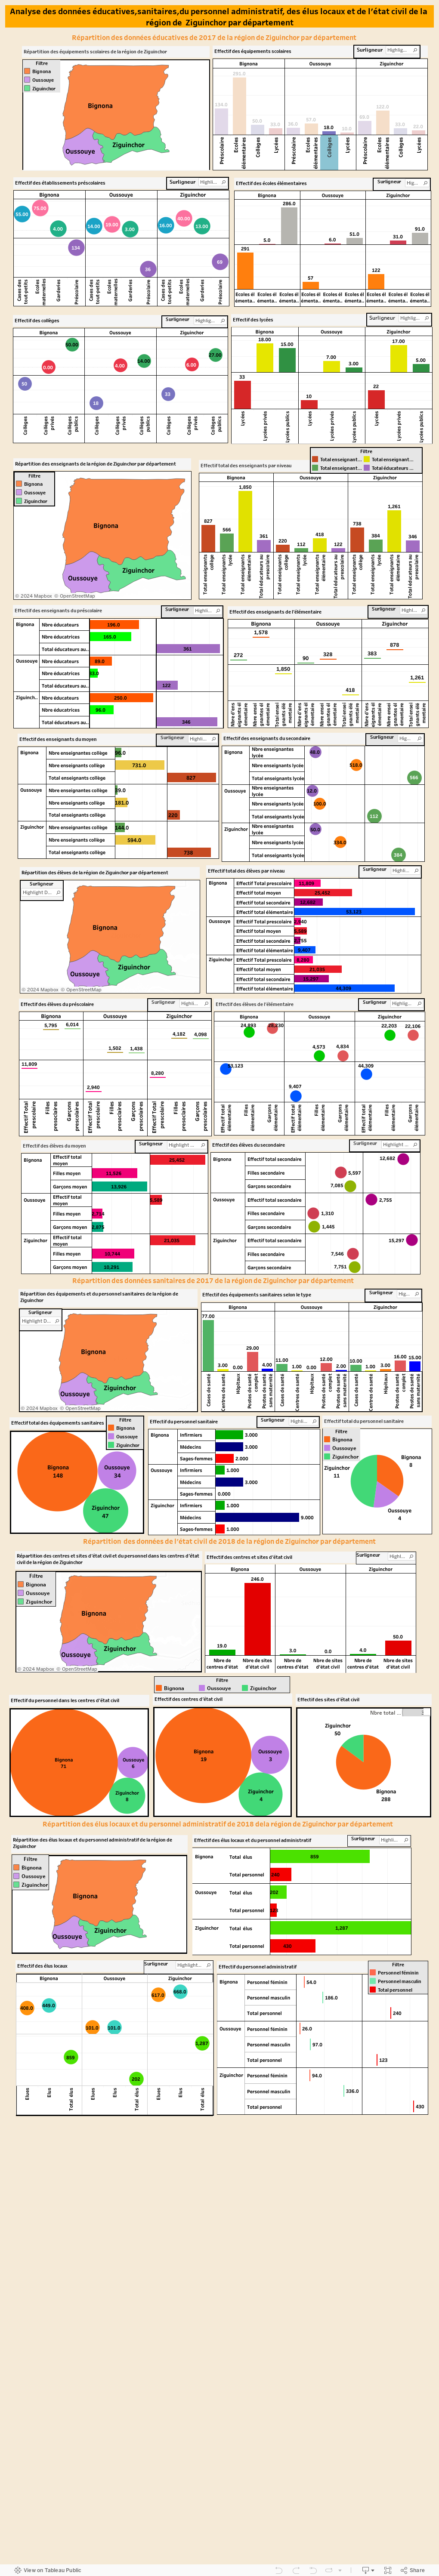 Analyse des données éducatives,sanitaires,du personnel administratif, des élus locaux et de l'état civil de la région de  Ziguinchor par département 